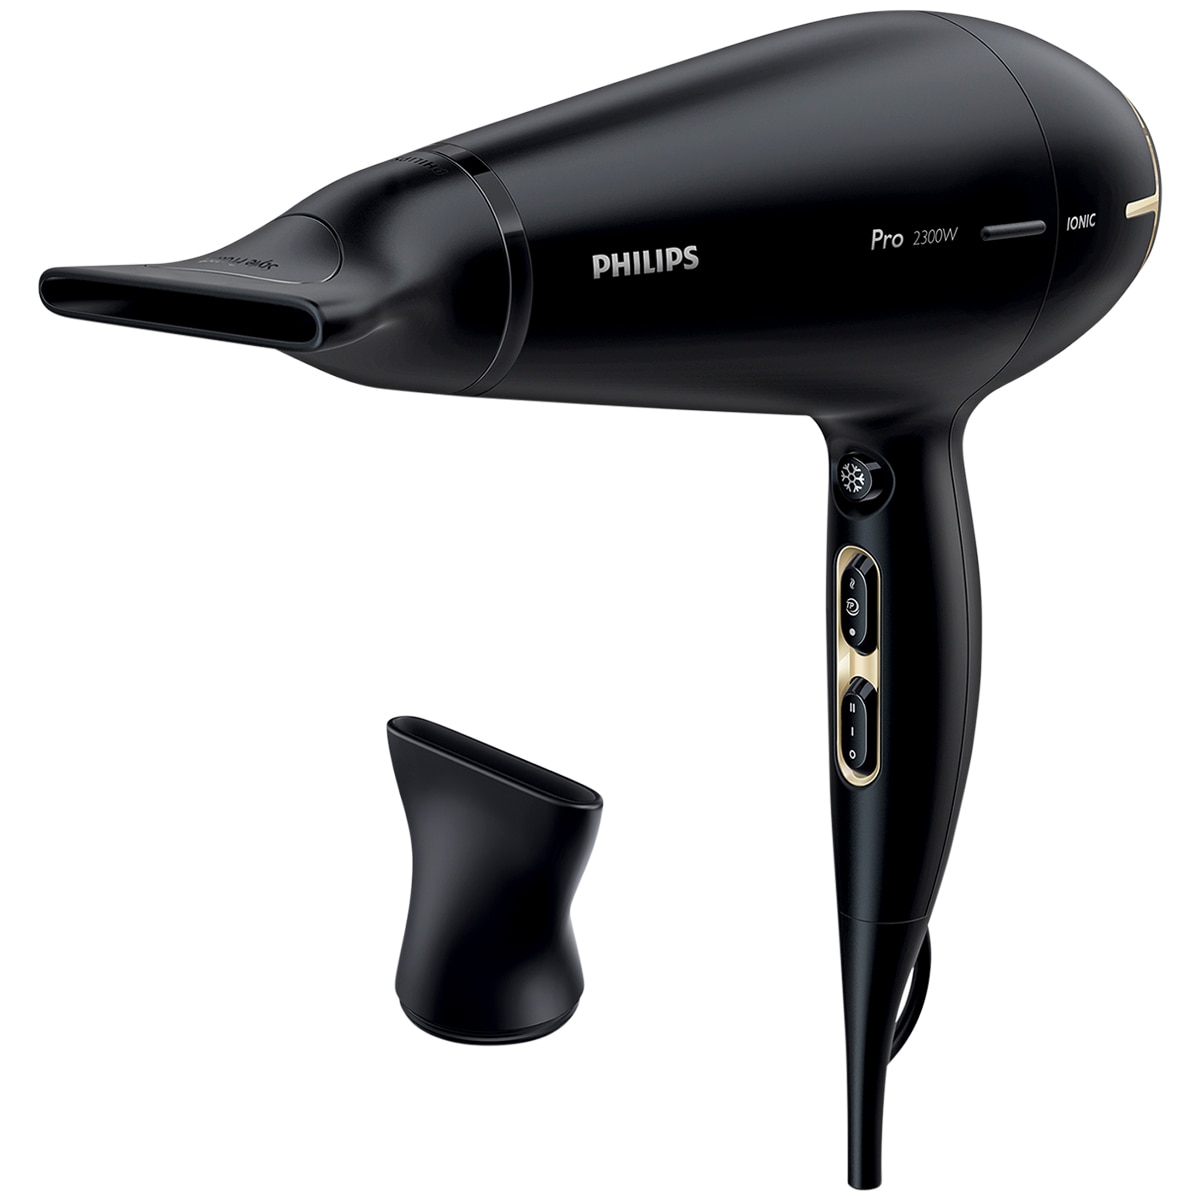 Philips Pro Hair Dryer HPS920 | Costco Australia